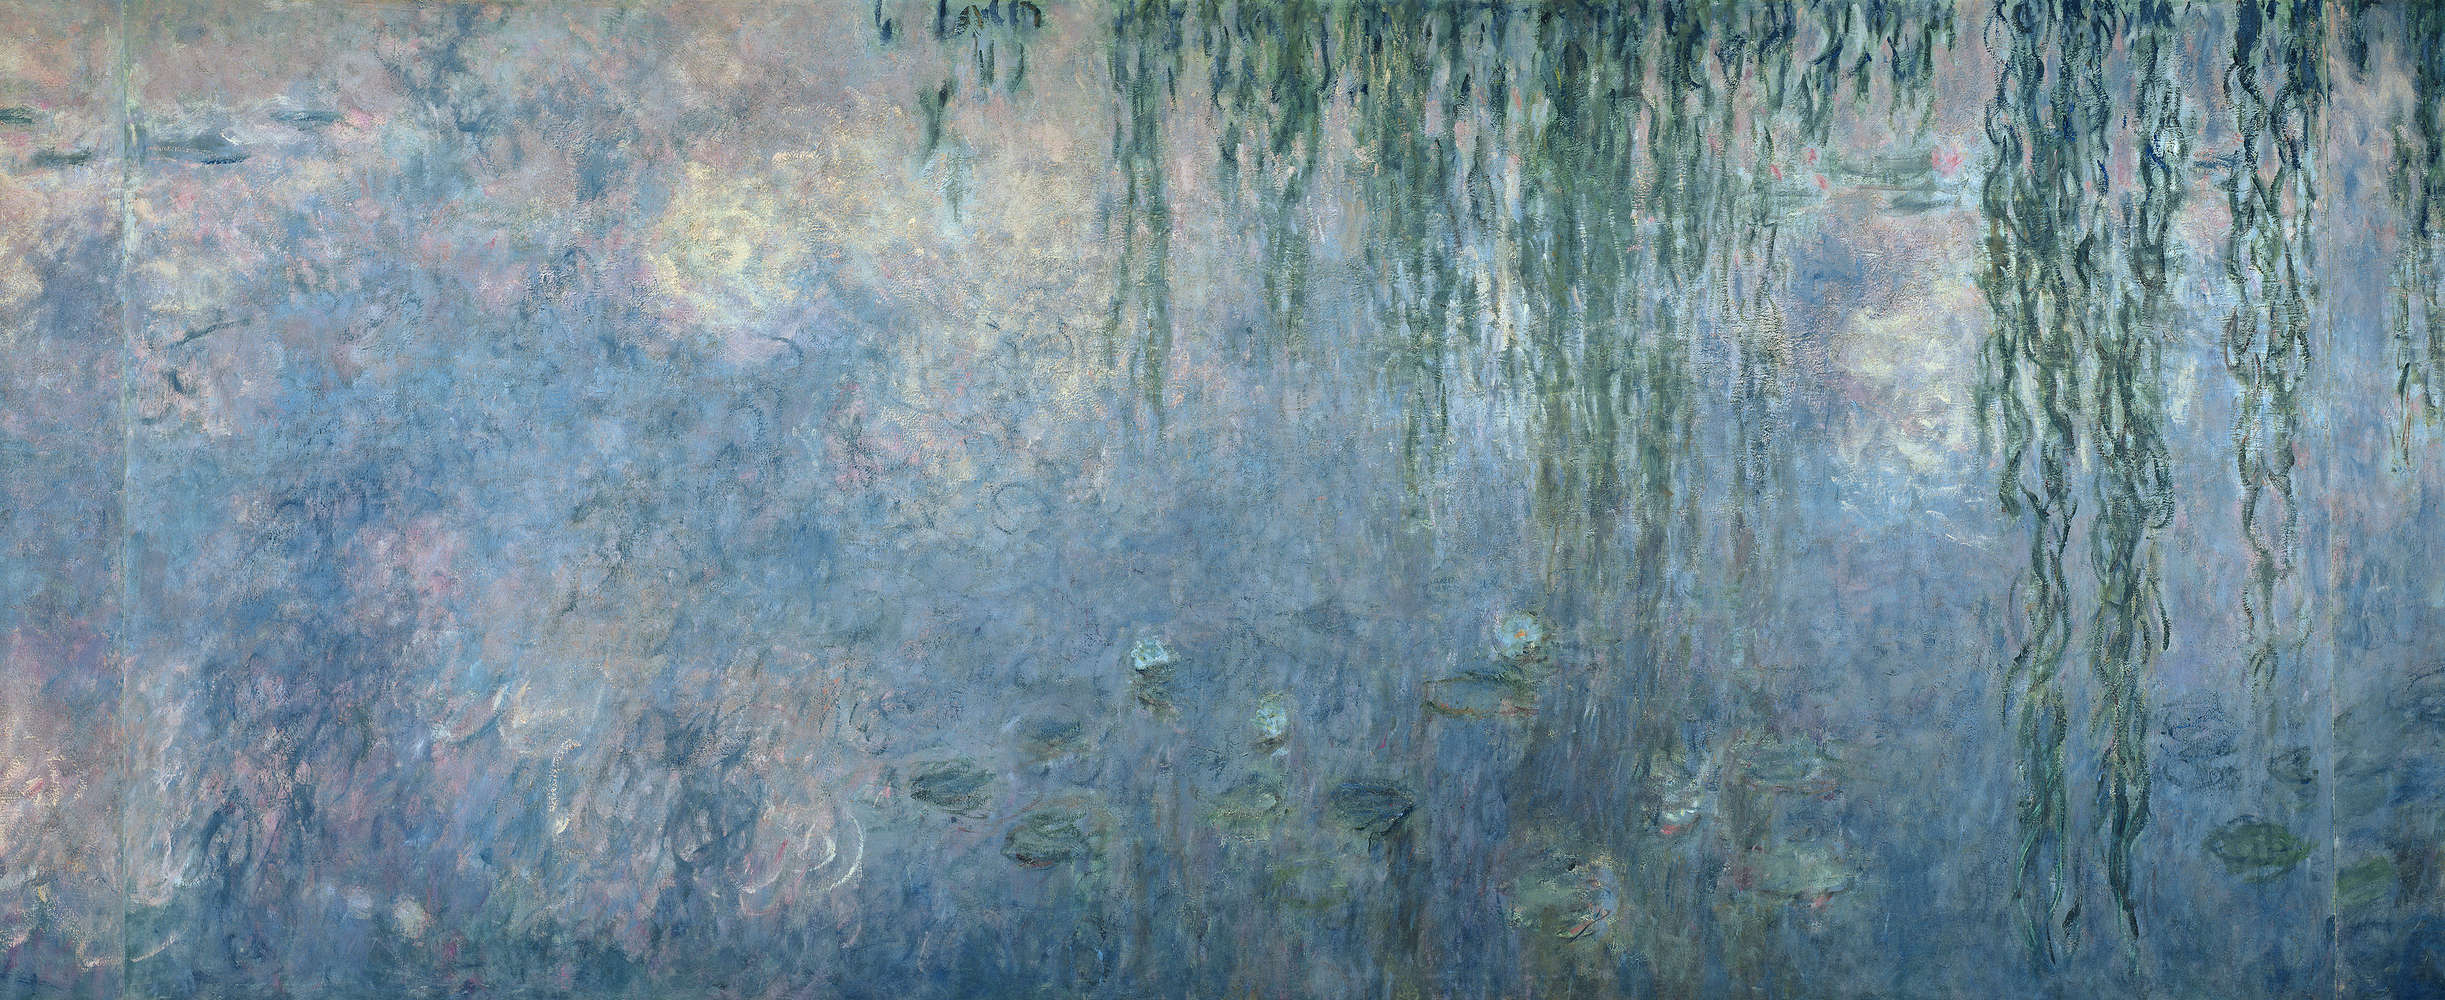             Papier peint "Nymphéas : matin avec saules pleureurs" détail de Claude Monet
        